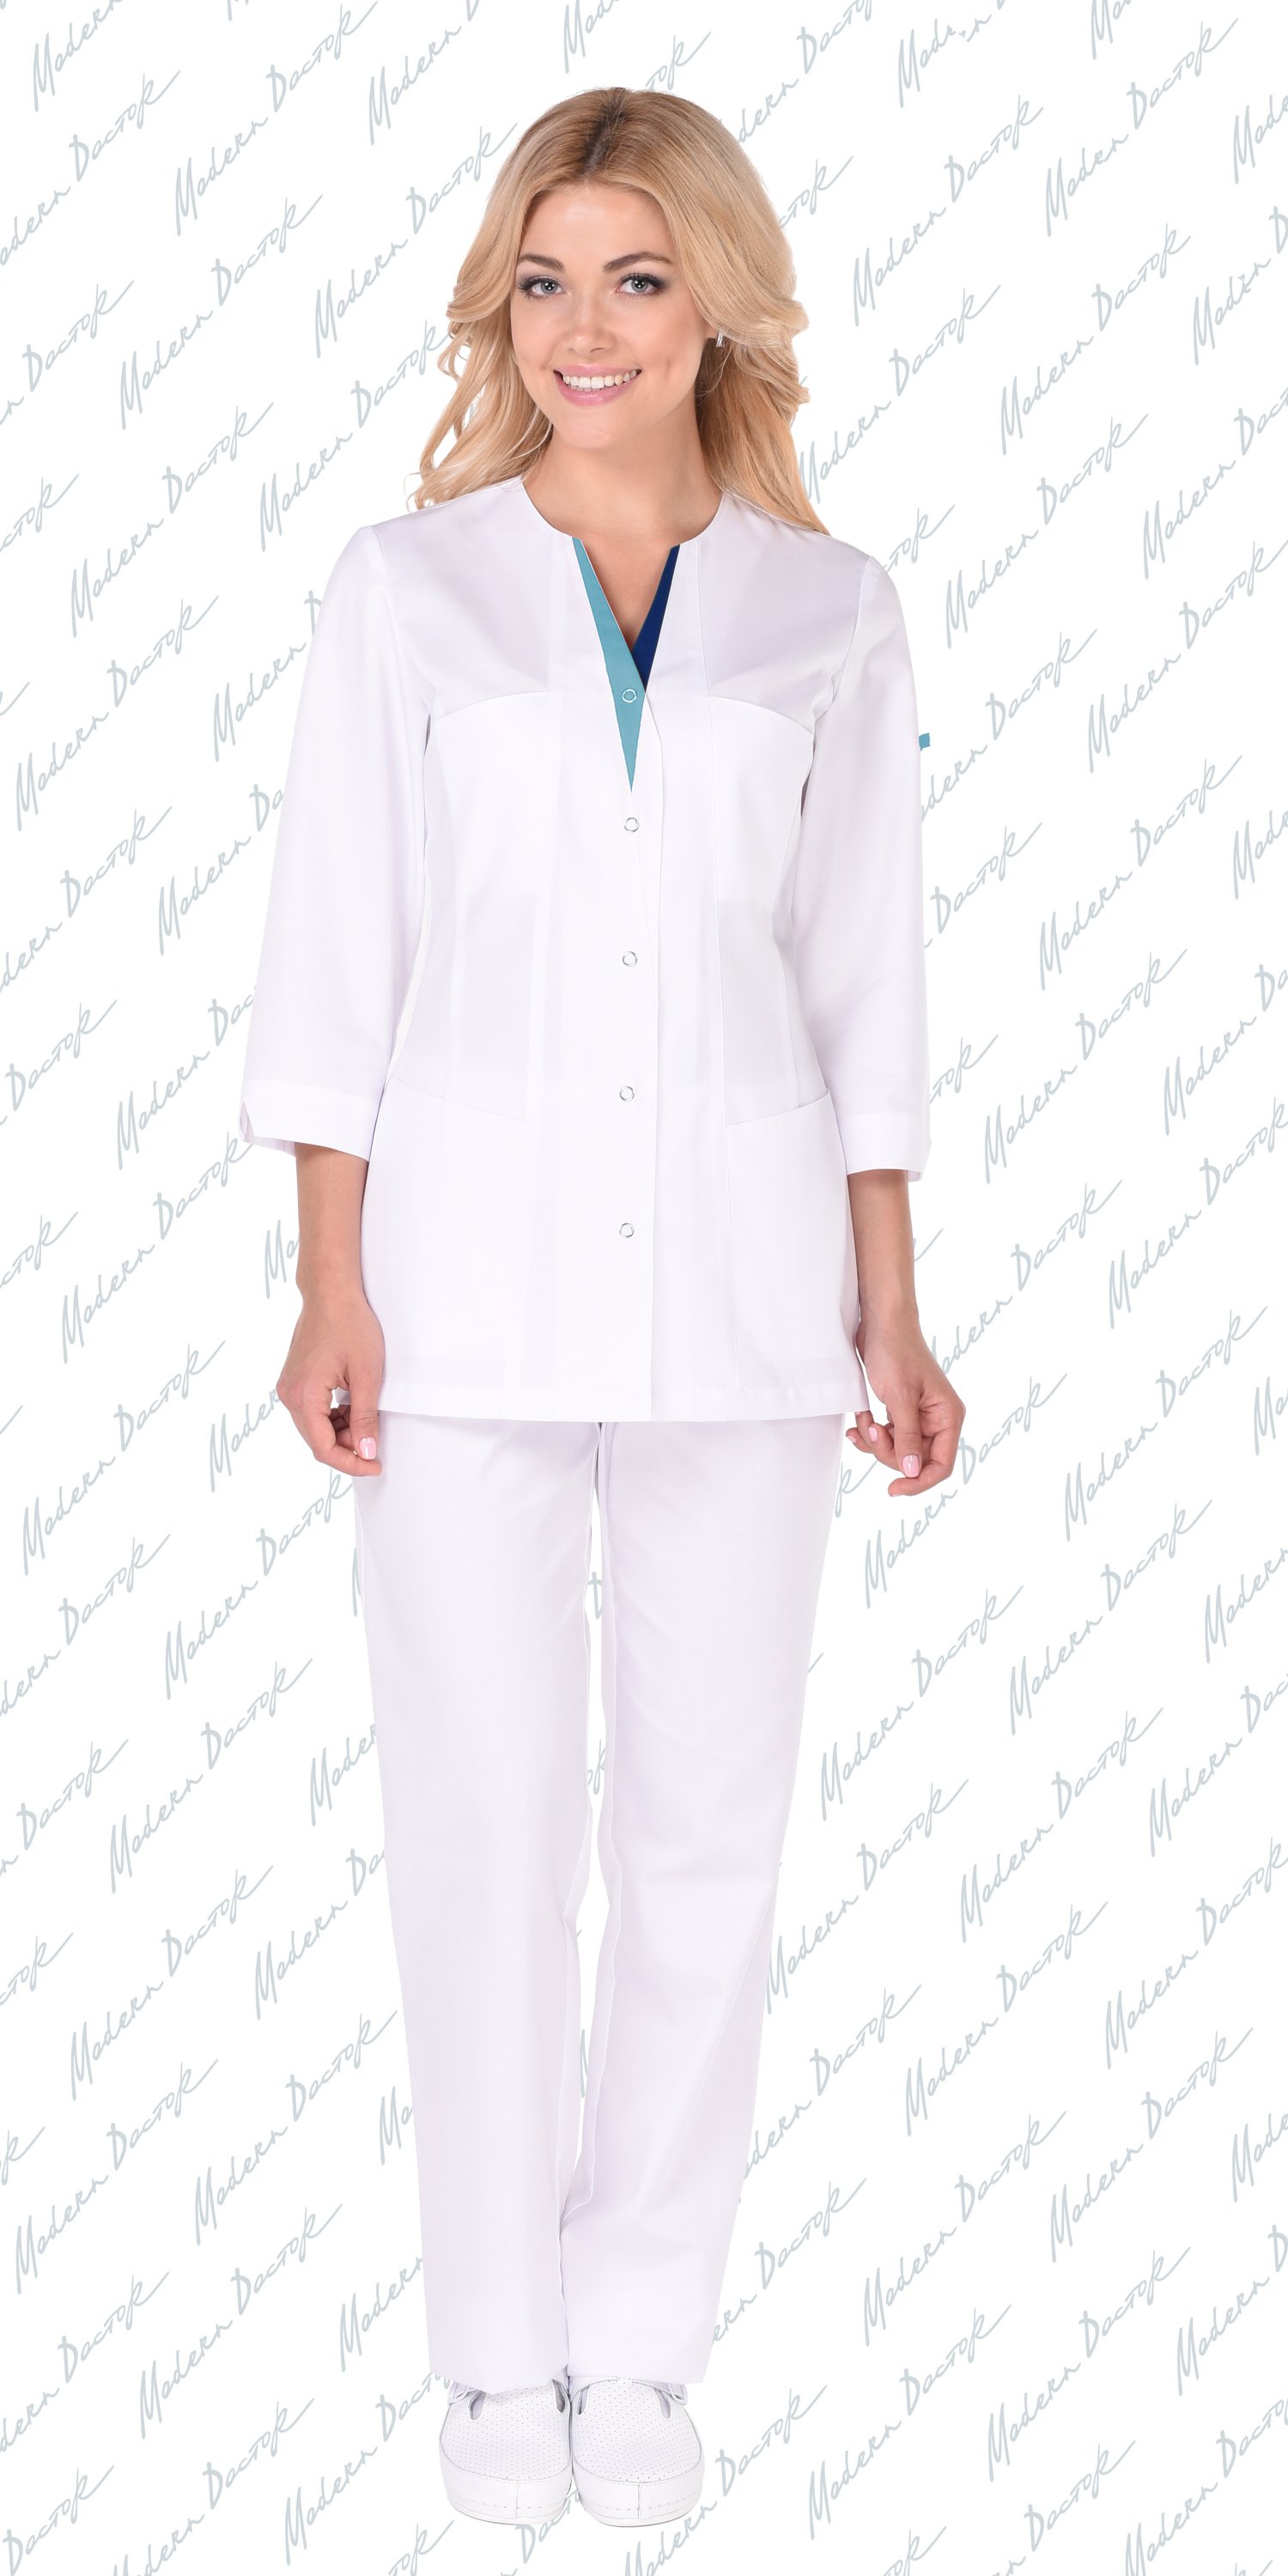 Сайт медицинской одежды модный. Блузон женский медицинский модный доктор. Медицинский халат доктор Кэмерон. Atkara медицинская одежда 20-002a. Блузон 11132 модный доктор.